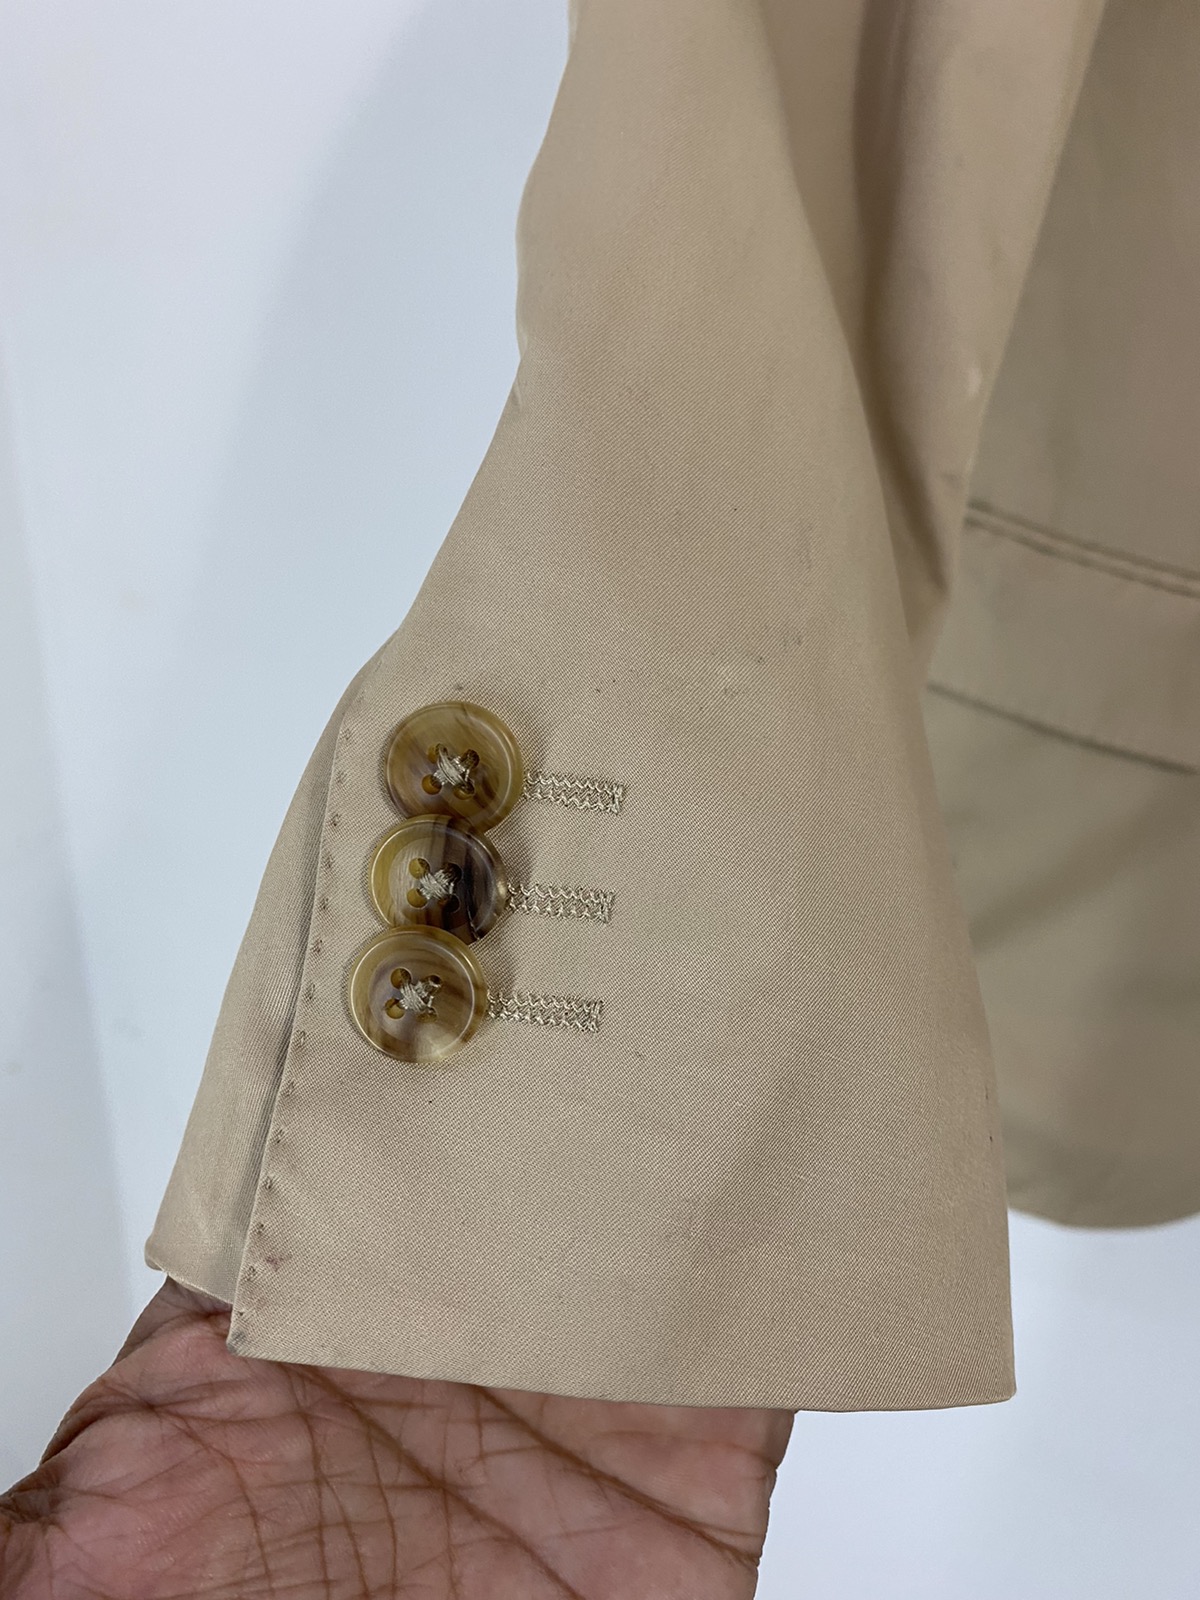 Jil Sander X Uniqlo Suit Jacket Design Two Button Design - 4